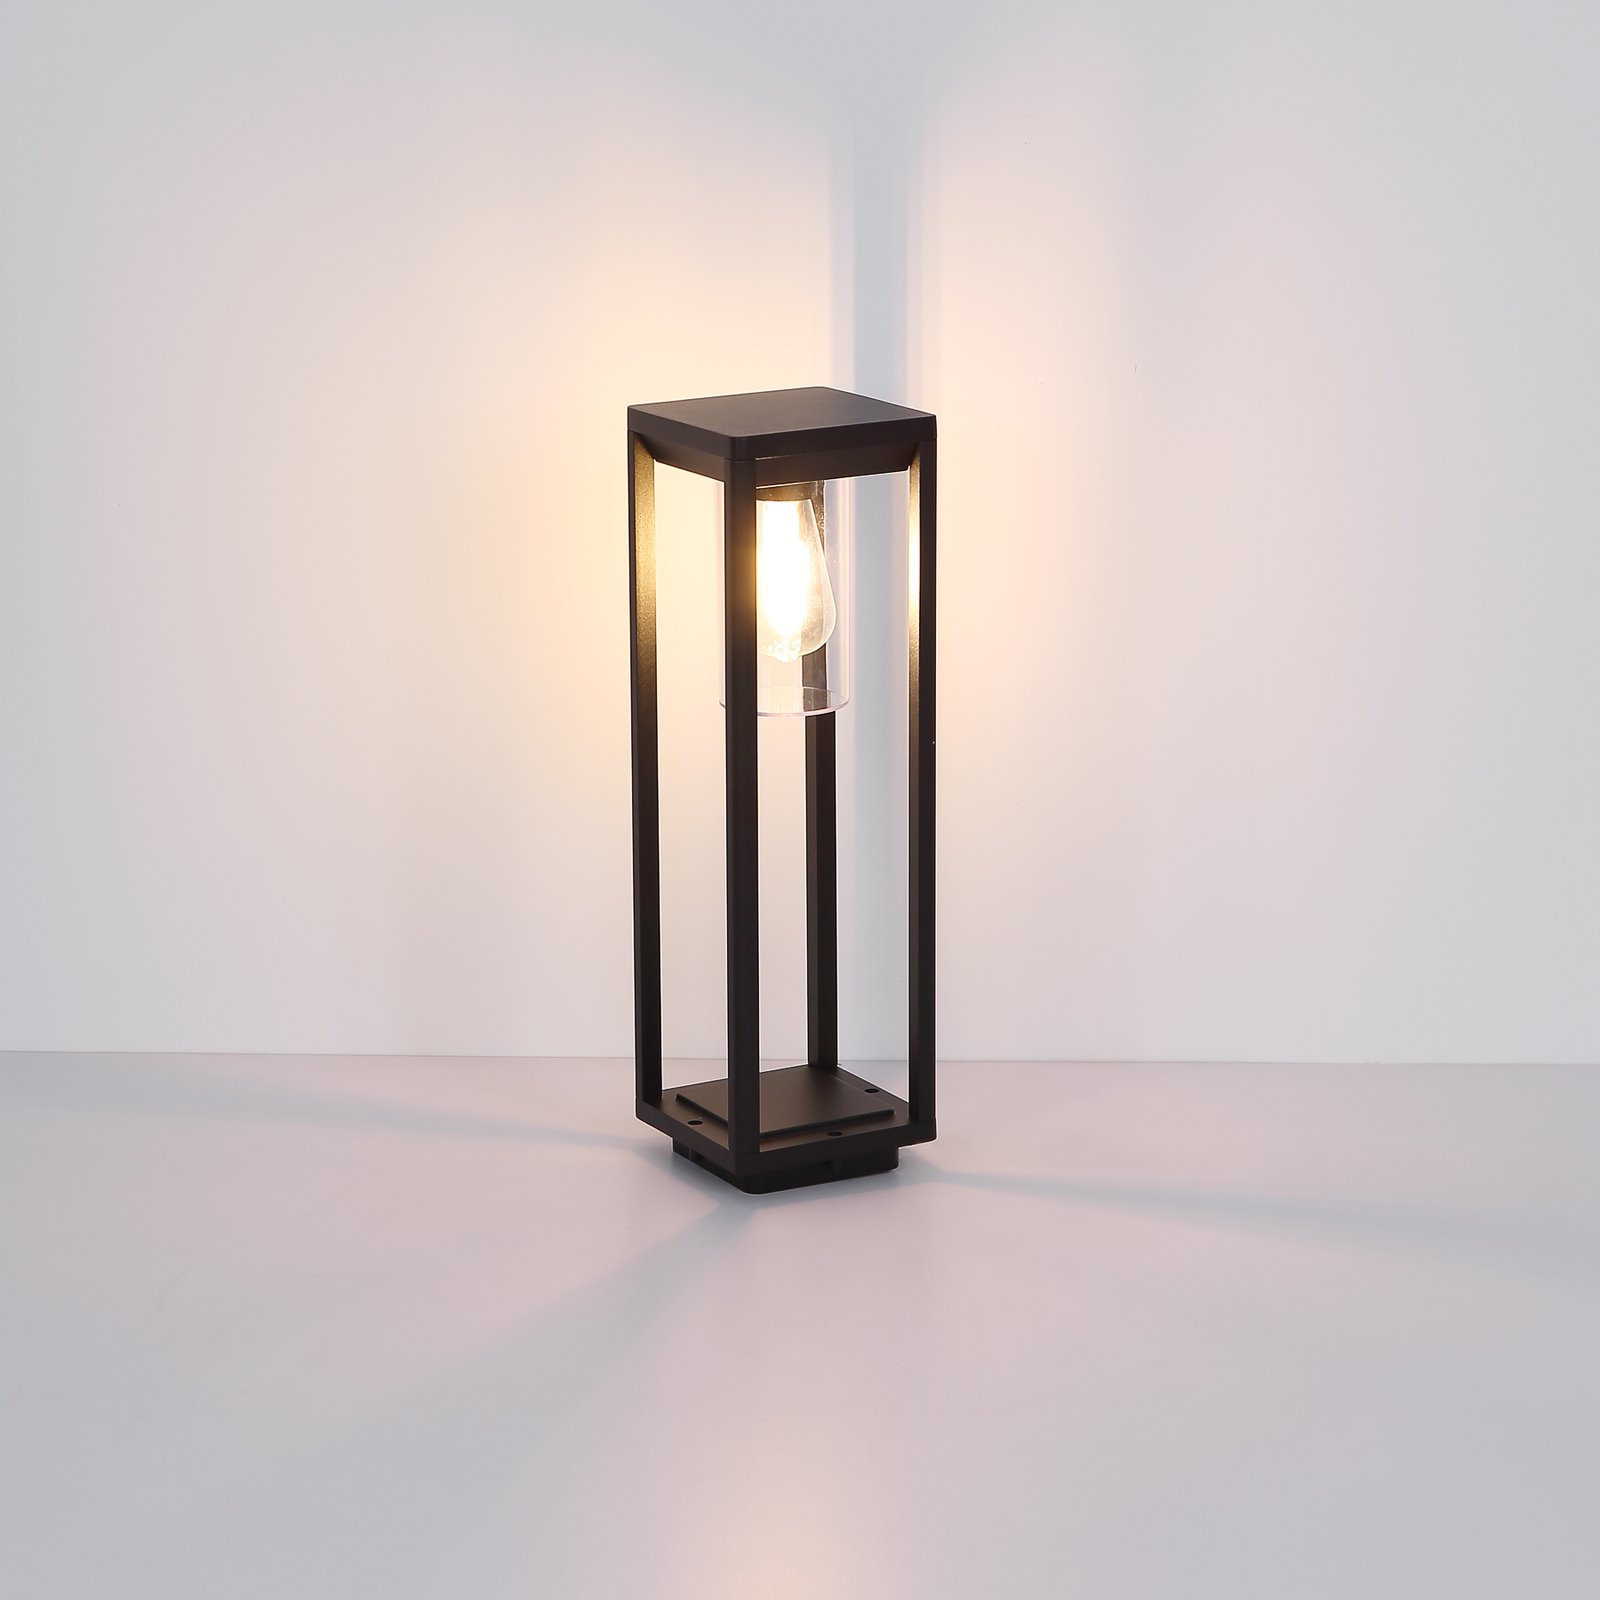 Soklové svetlo Candela, 50 cm, bez snímača